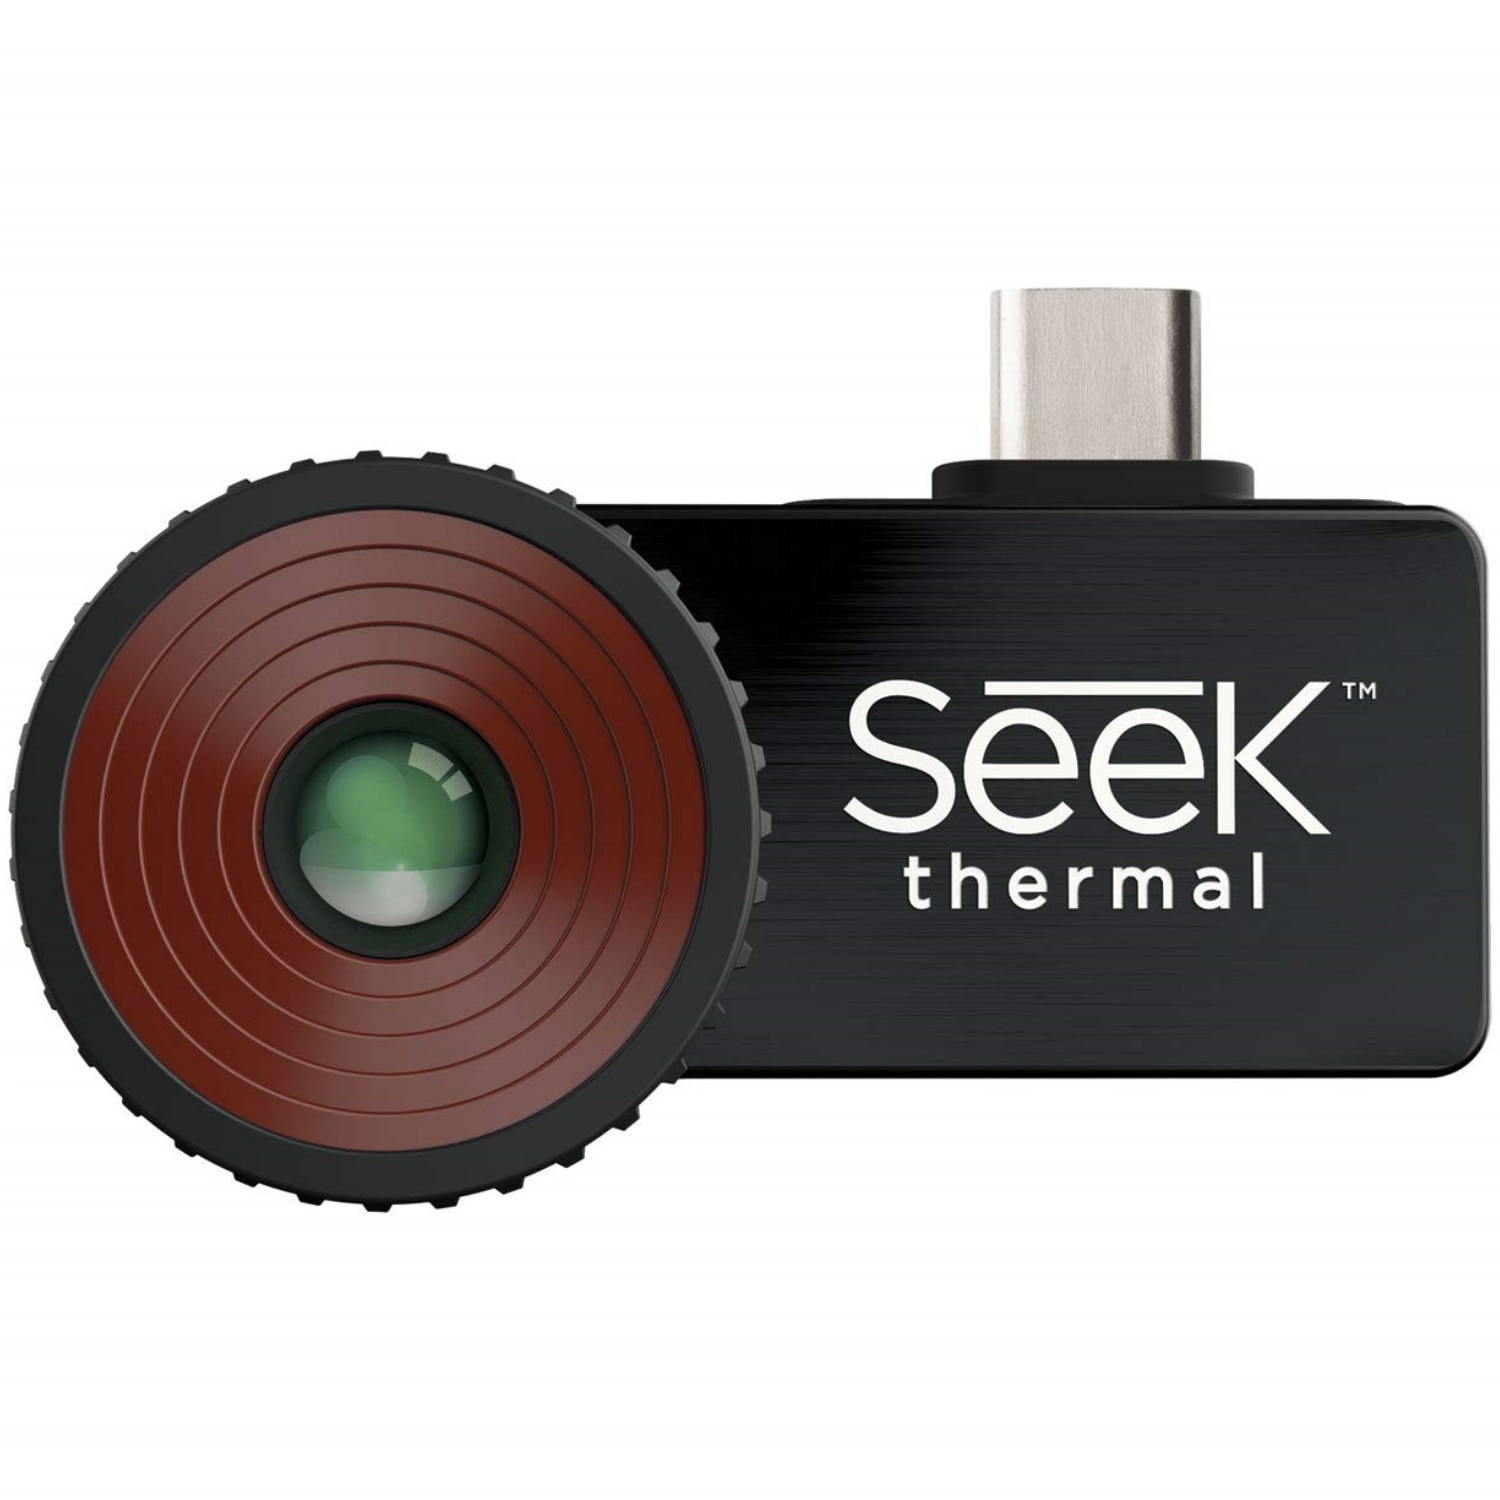 Thermal seek - Unsere Produkte unter der Menge an analysierten Thermal seek